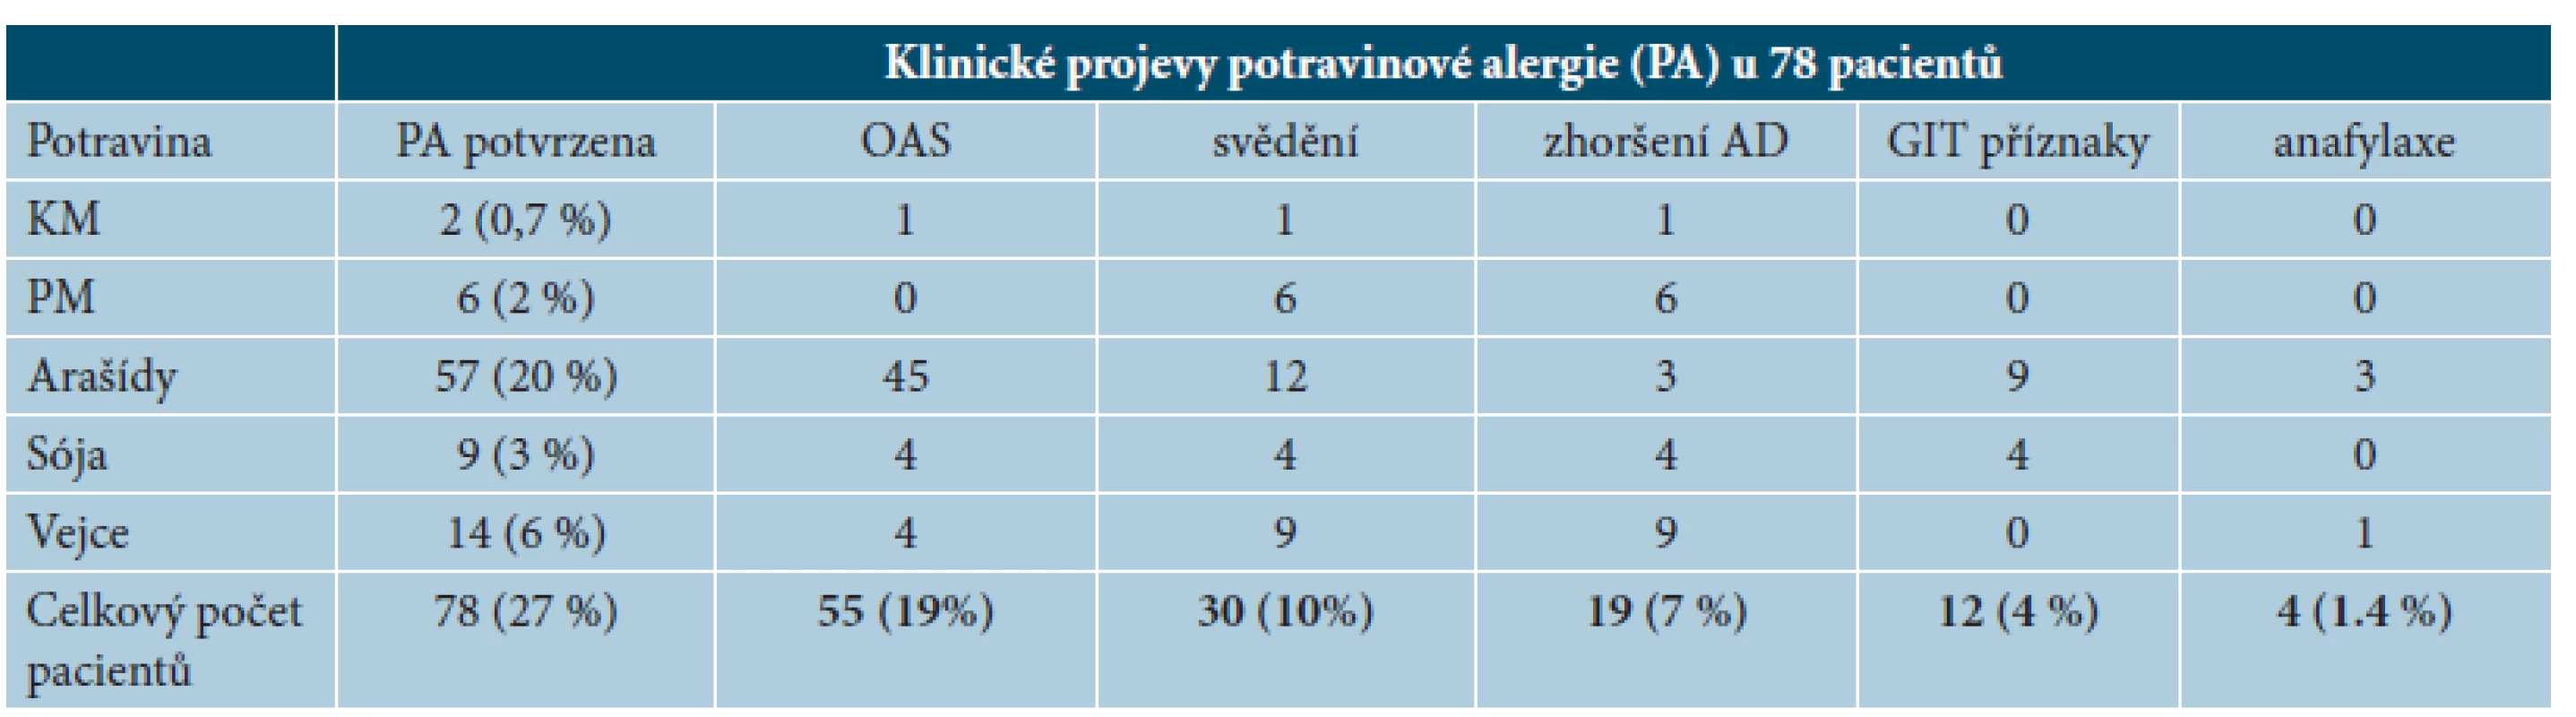 Kliniceké projevy potravinové alergie u 78 pacientů